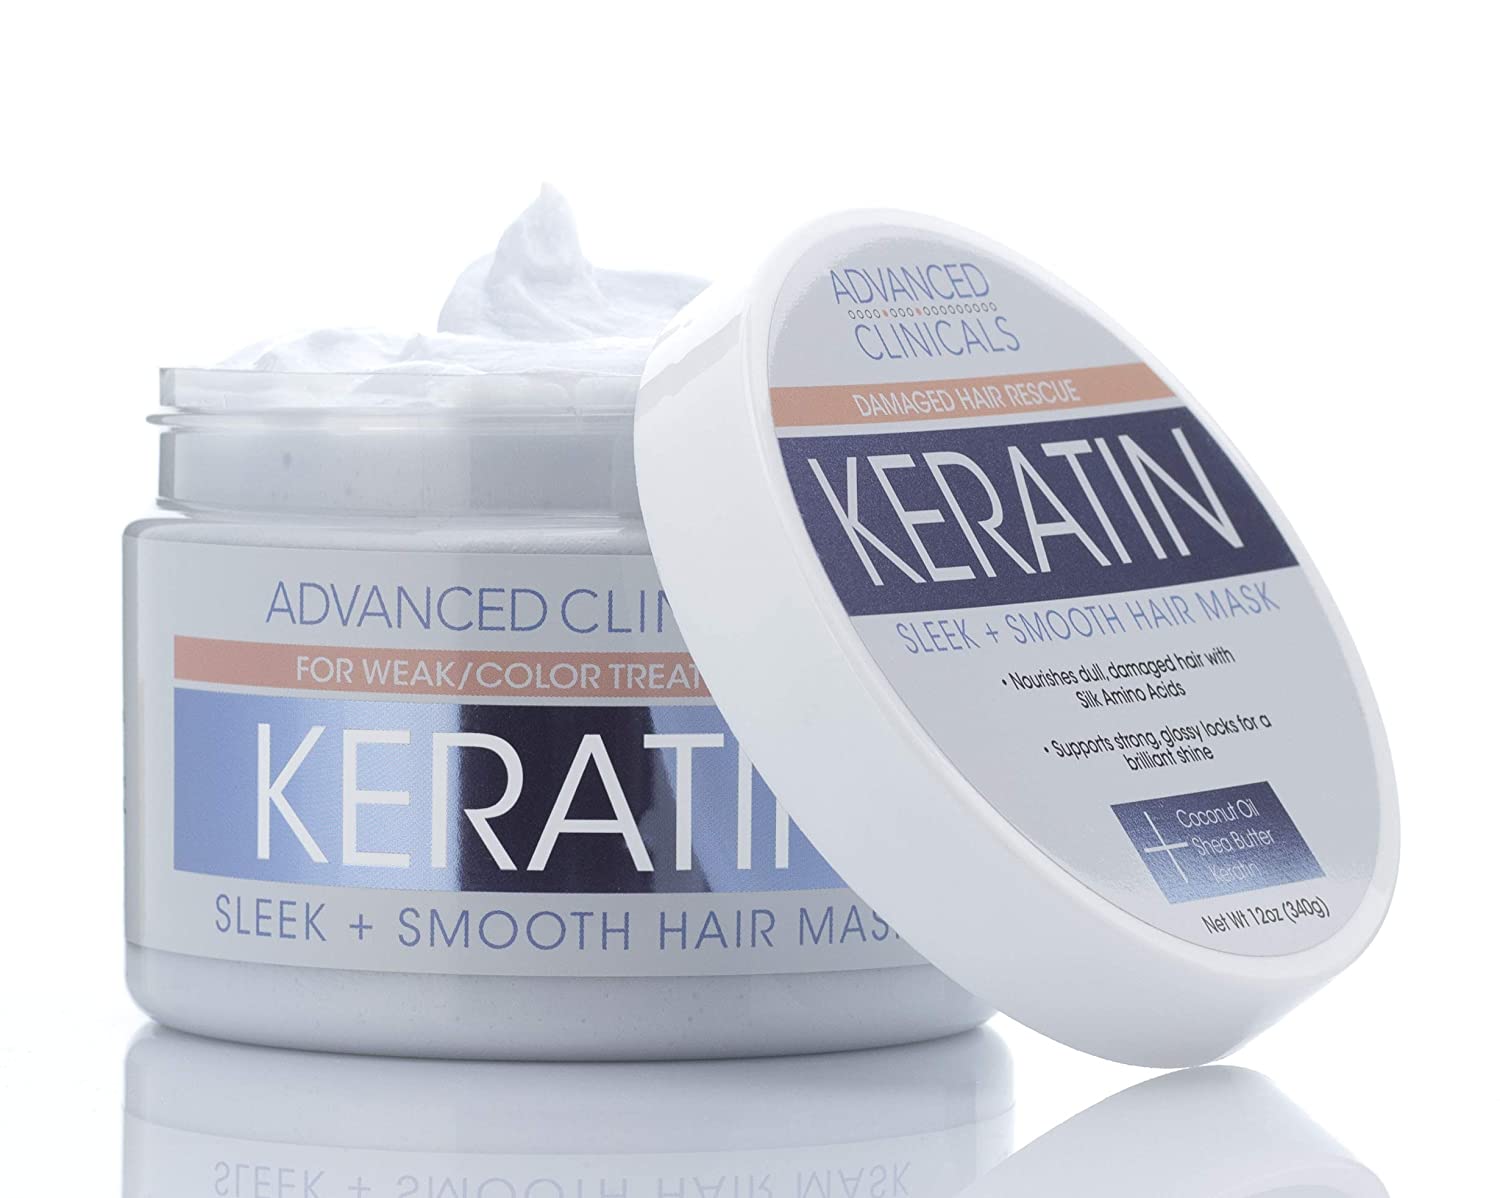 krydstogt tale Oprør Keratin Hair Repair Mask - Advanced Clinicals